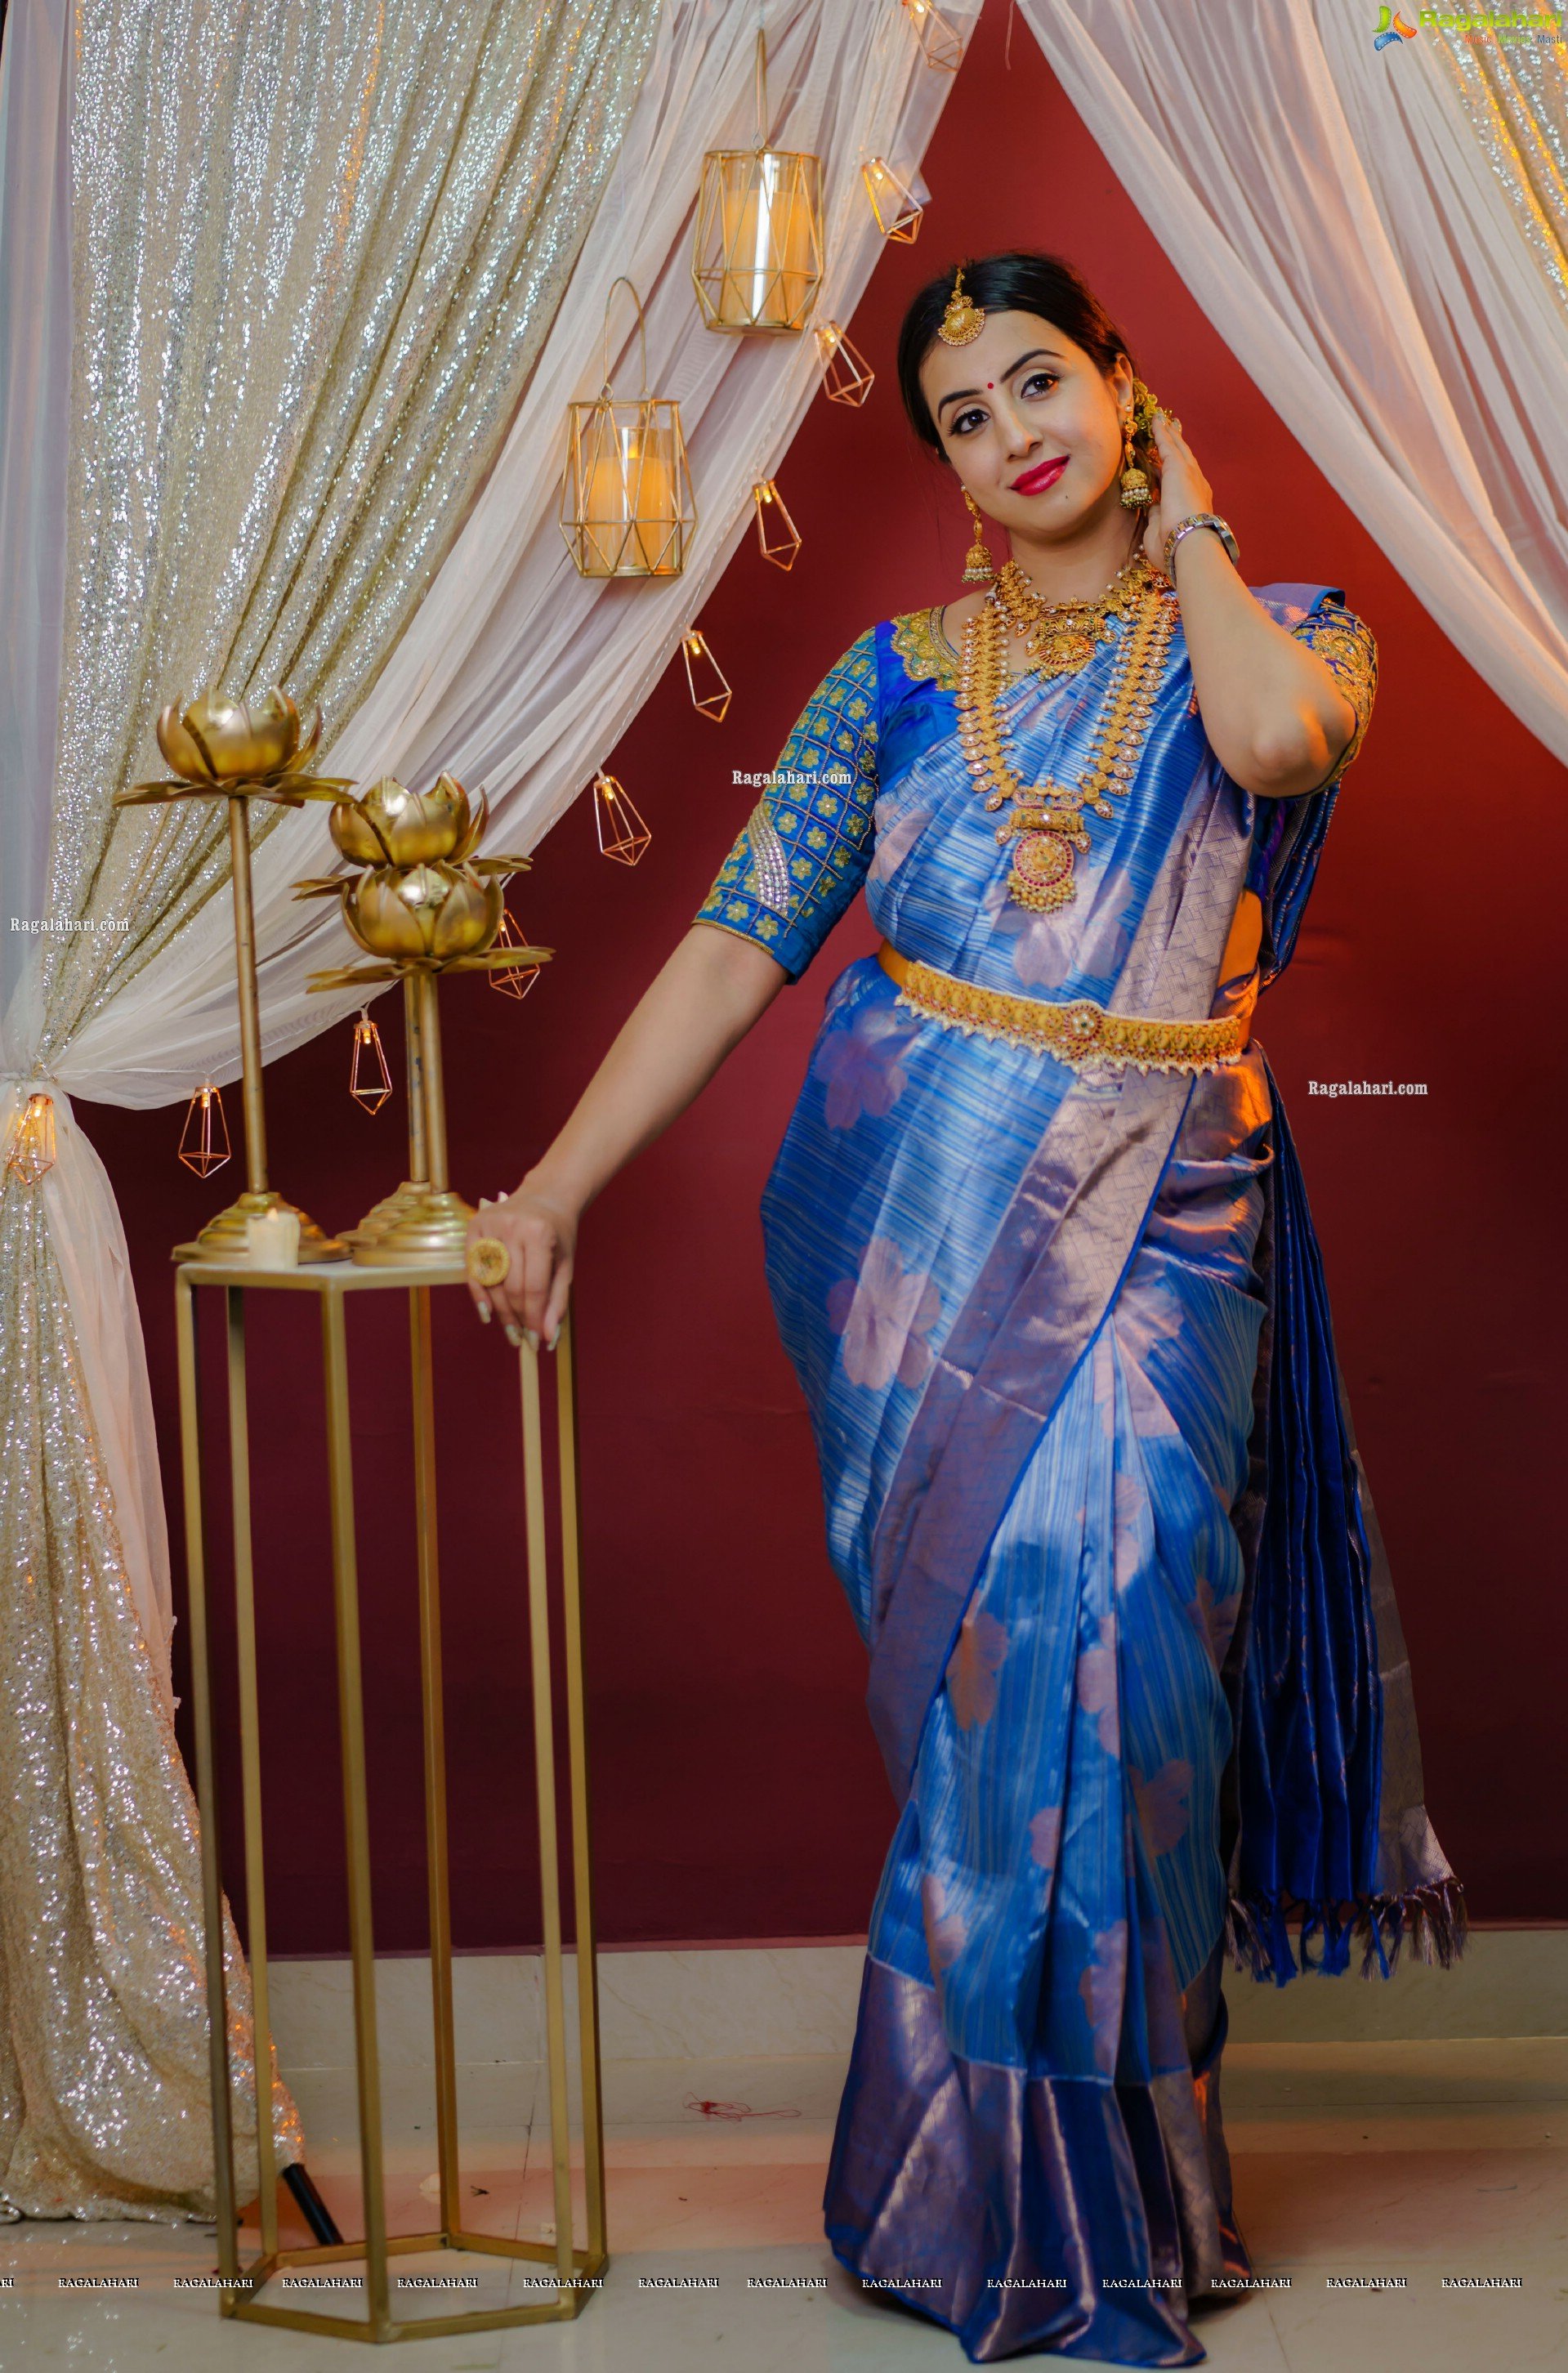 Sanjjanaa Galrani in Traditional Silk Saree and Jewellery, HD Photo Gallery